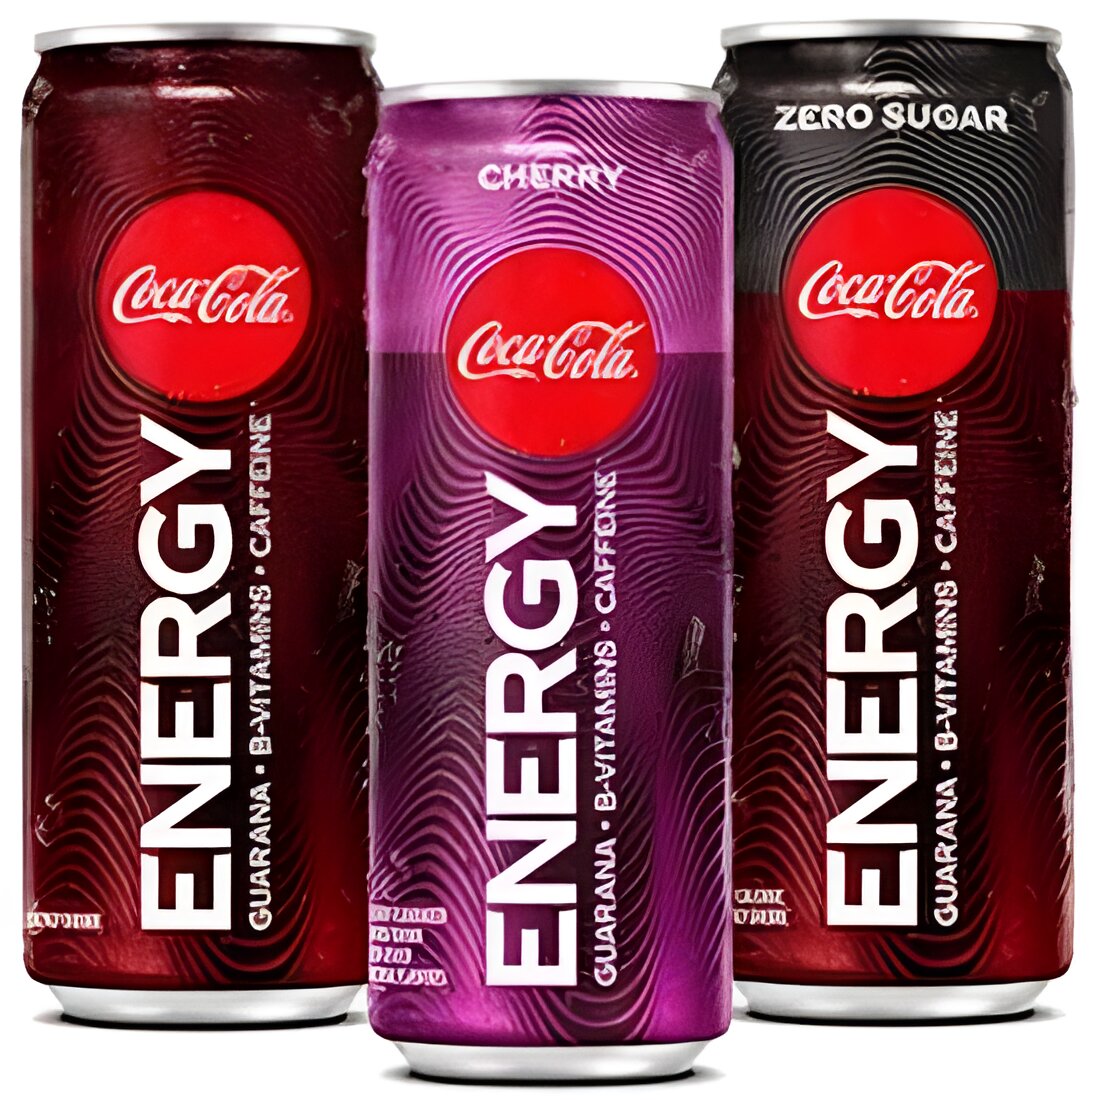 Free Coke Energy